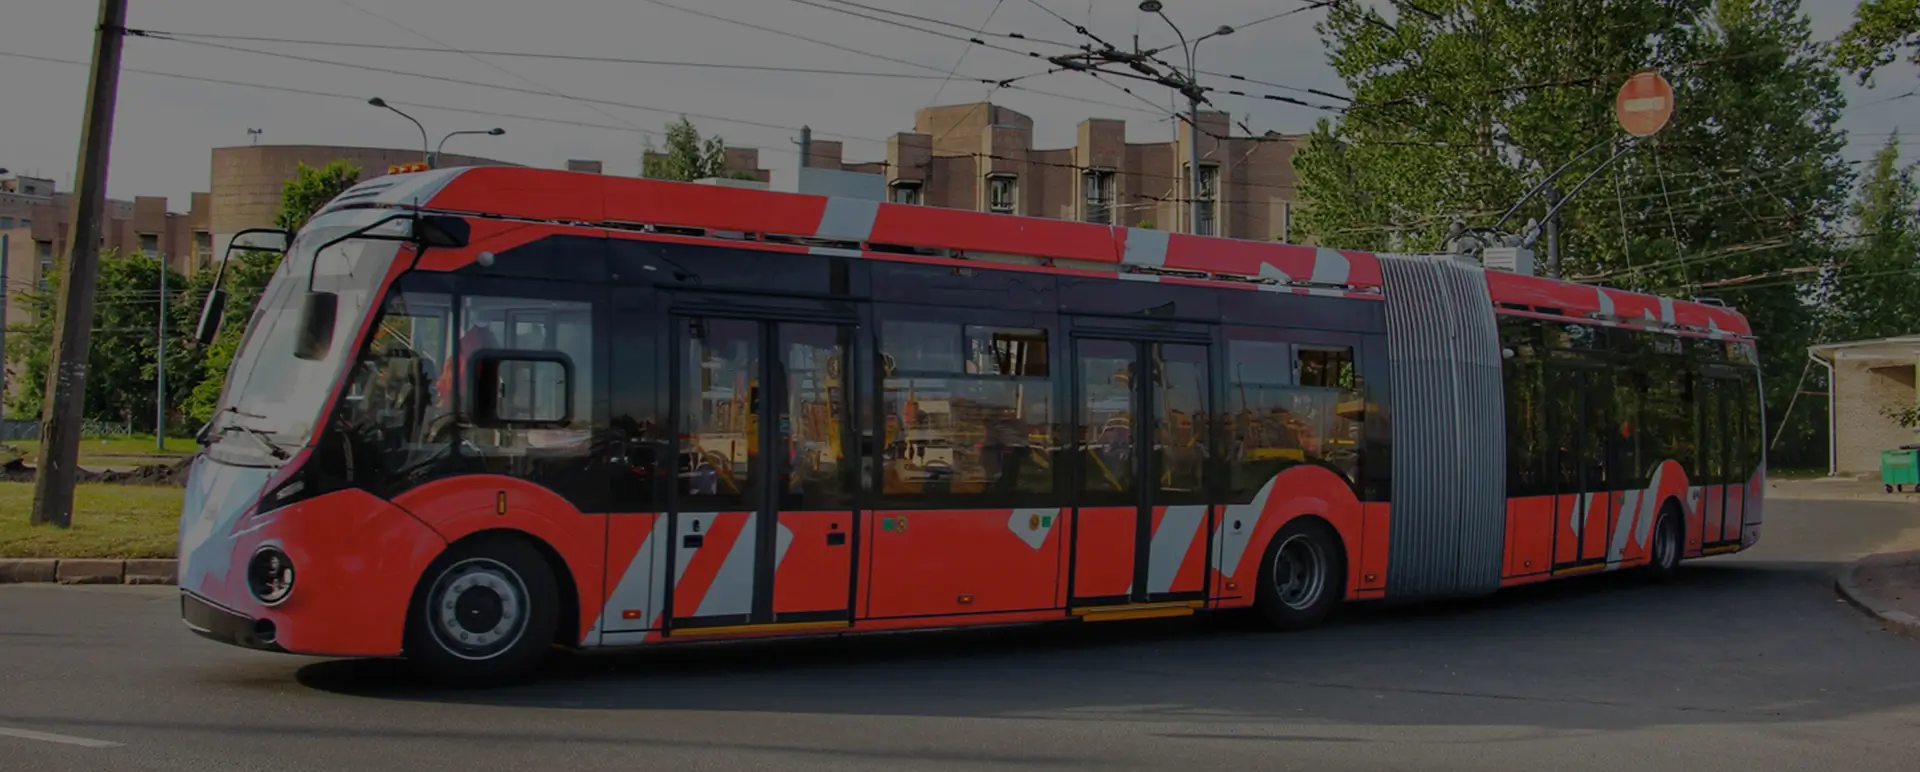 Транспортировка троллейбусов. Троллейбус nhjkf. Как перевозят троллейбус из города в город. Сколько стоит трале троллейбус. Перевозка троллейбусов